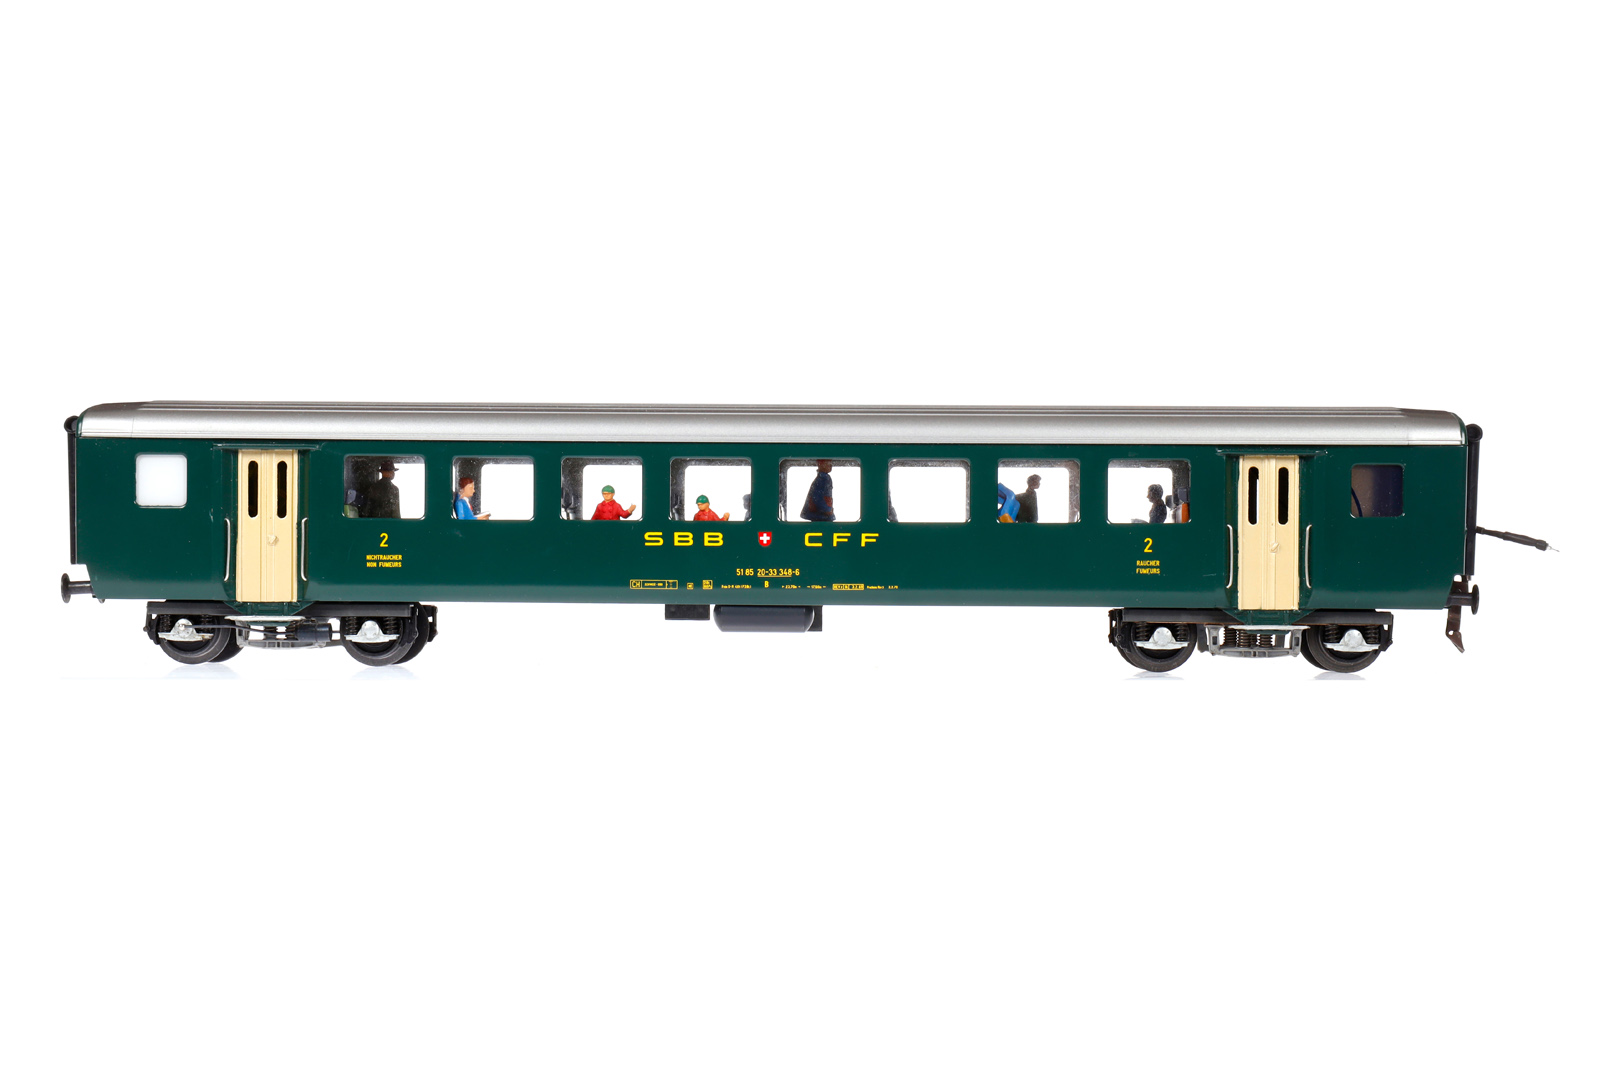 Hermann Personenwagen, Spur 0, grün, mit Inneneinrichtung und Fremdbeleuchtung, 2. Klasse, L 45,5, Z